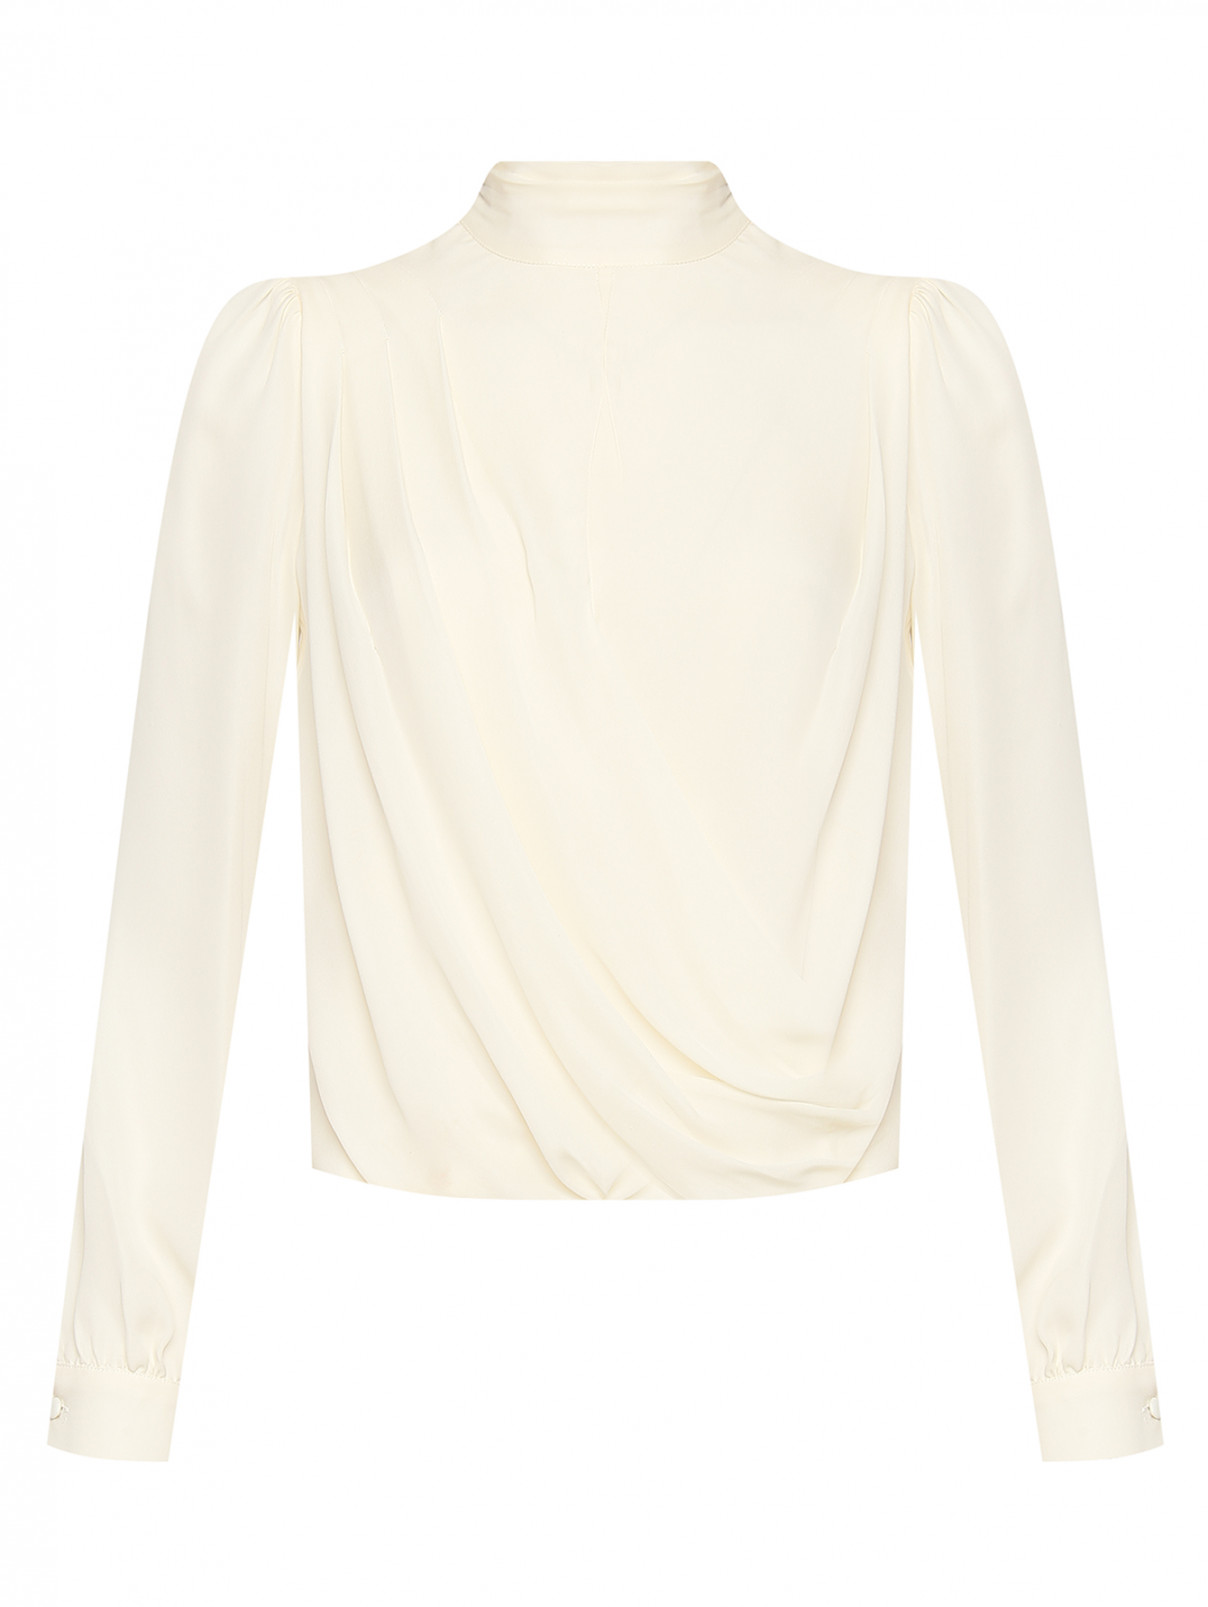 Блуза из шелка с драпировкой Michael by MK  –  Общий вид  – Цвет:  Белый